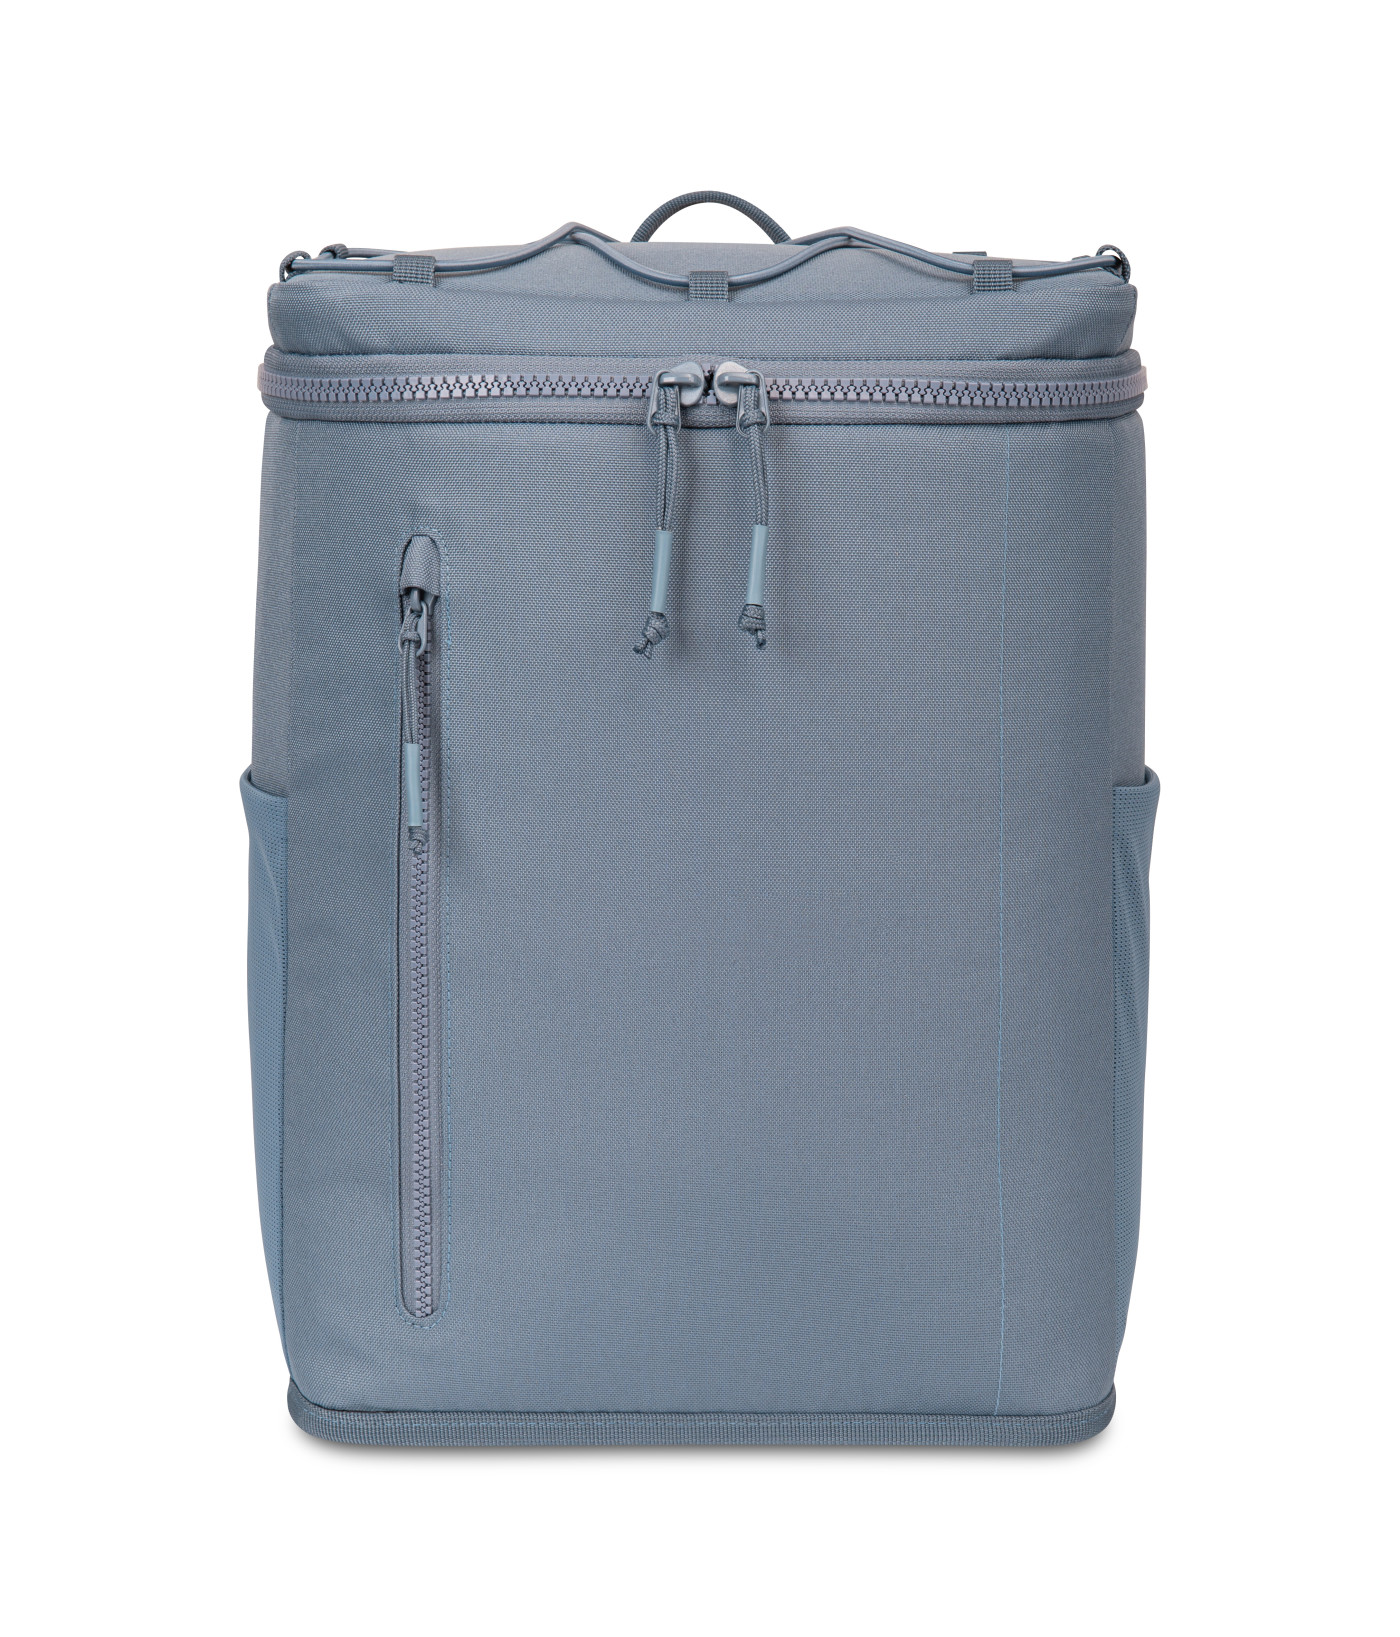 Gemline 101609 - Backpack Cooler